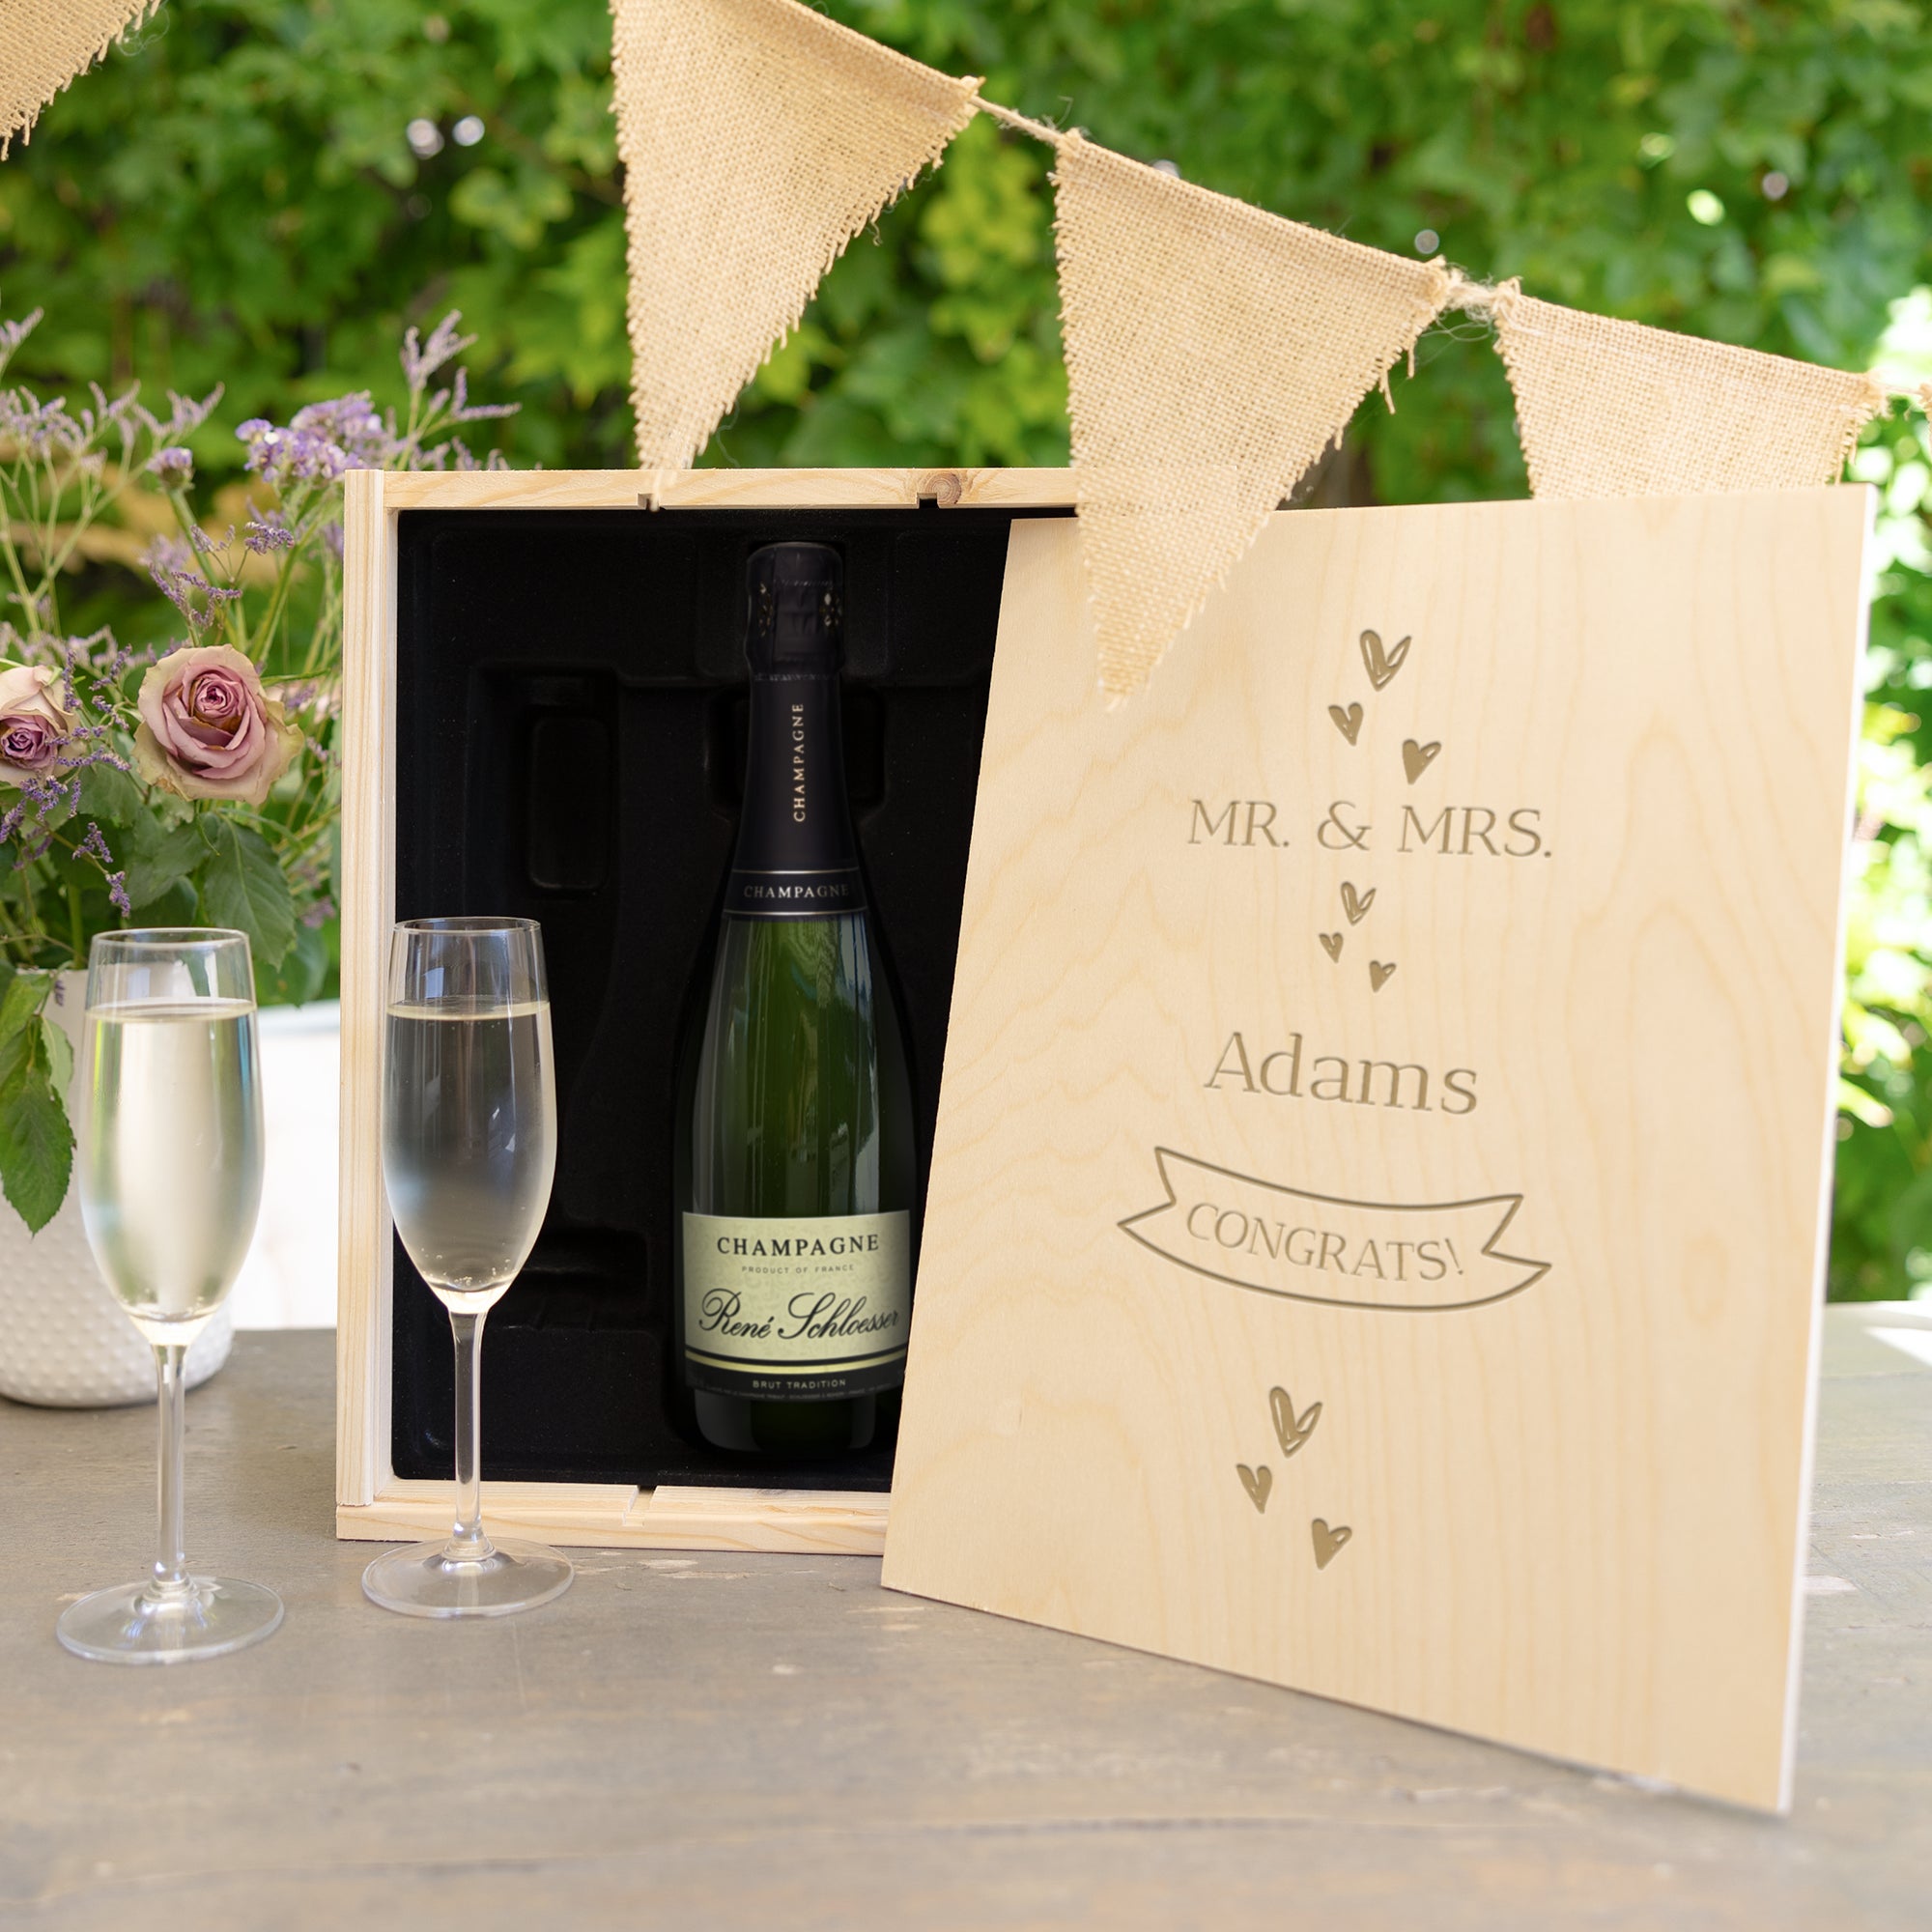 Champagner Geschenk personalisieren René Schloesser mit Gläsern und graviertem Deckel (750ml)  - Onlineshop YourSurprise